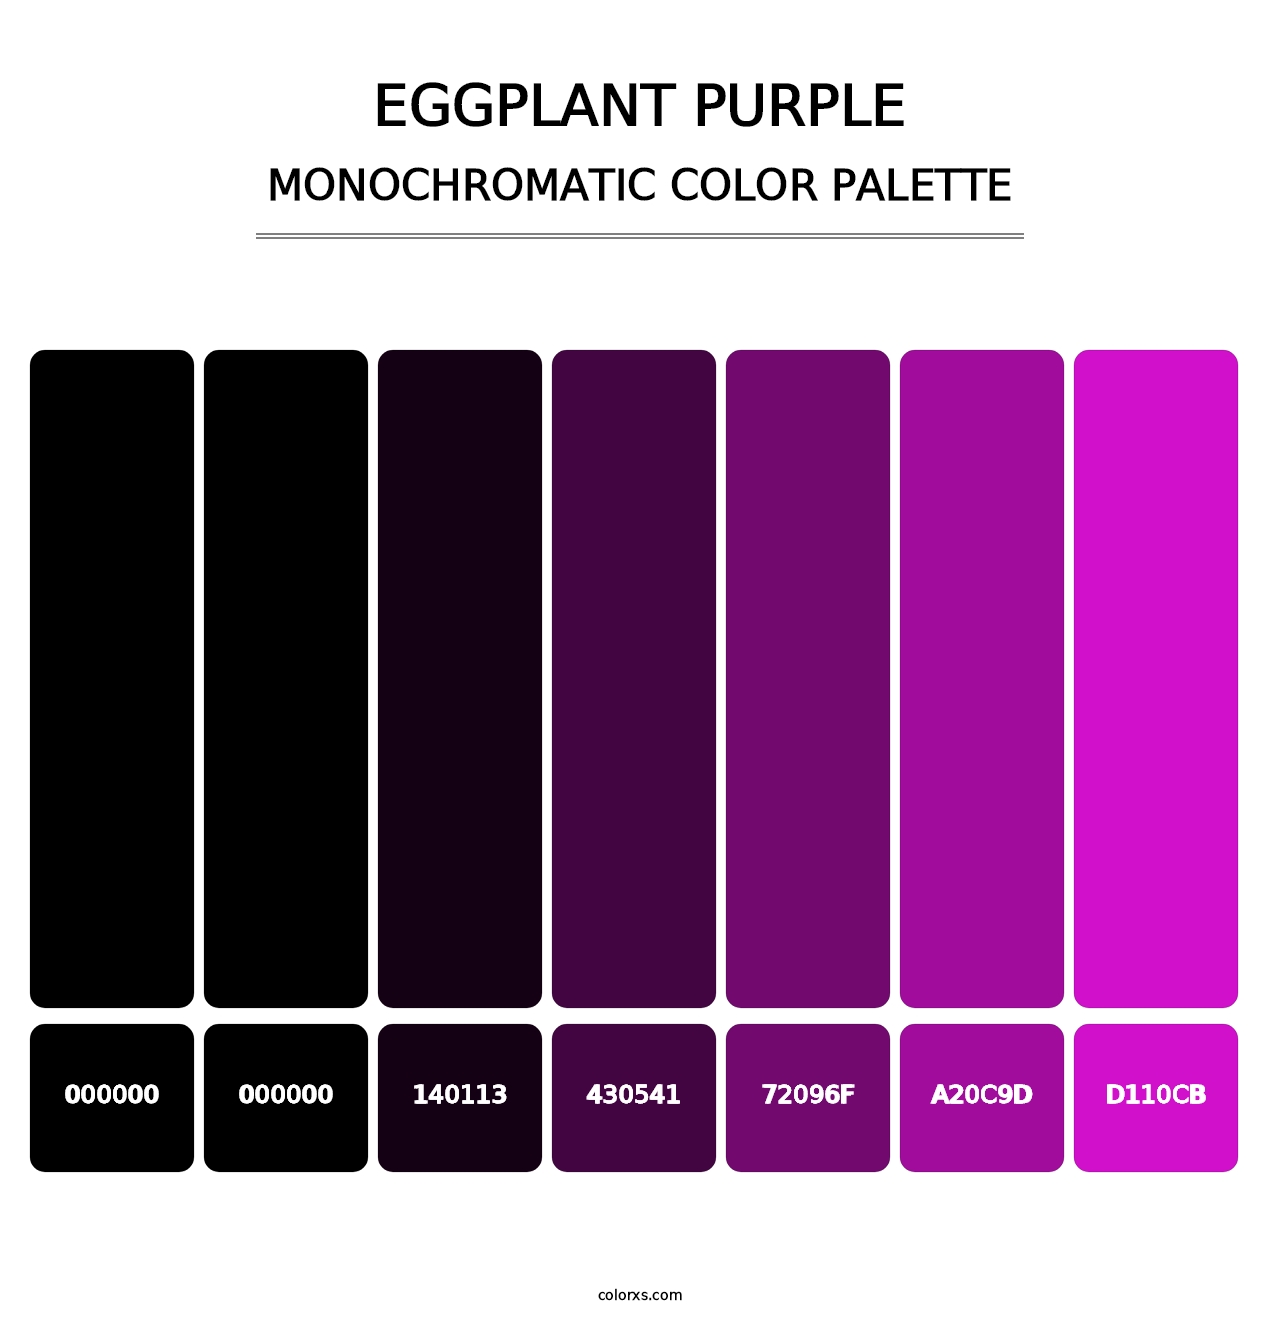 Eggplant Purple - Monochromatic Color Palette